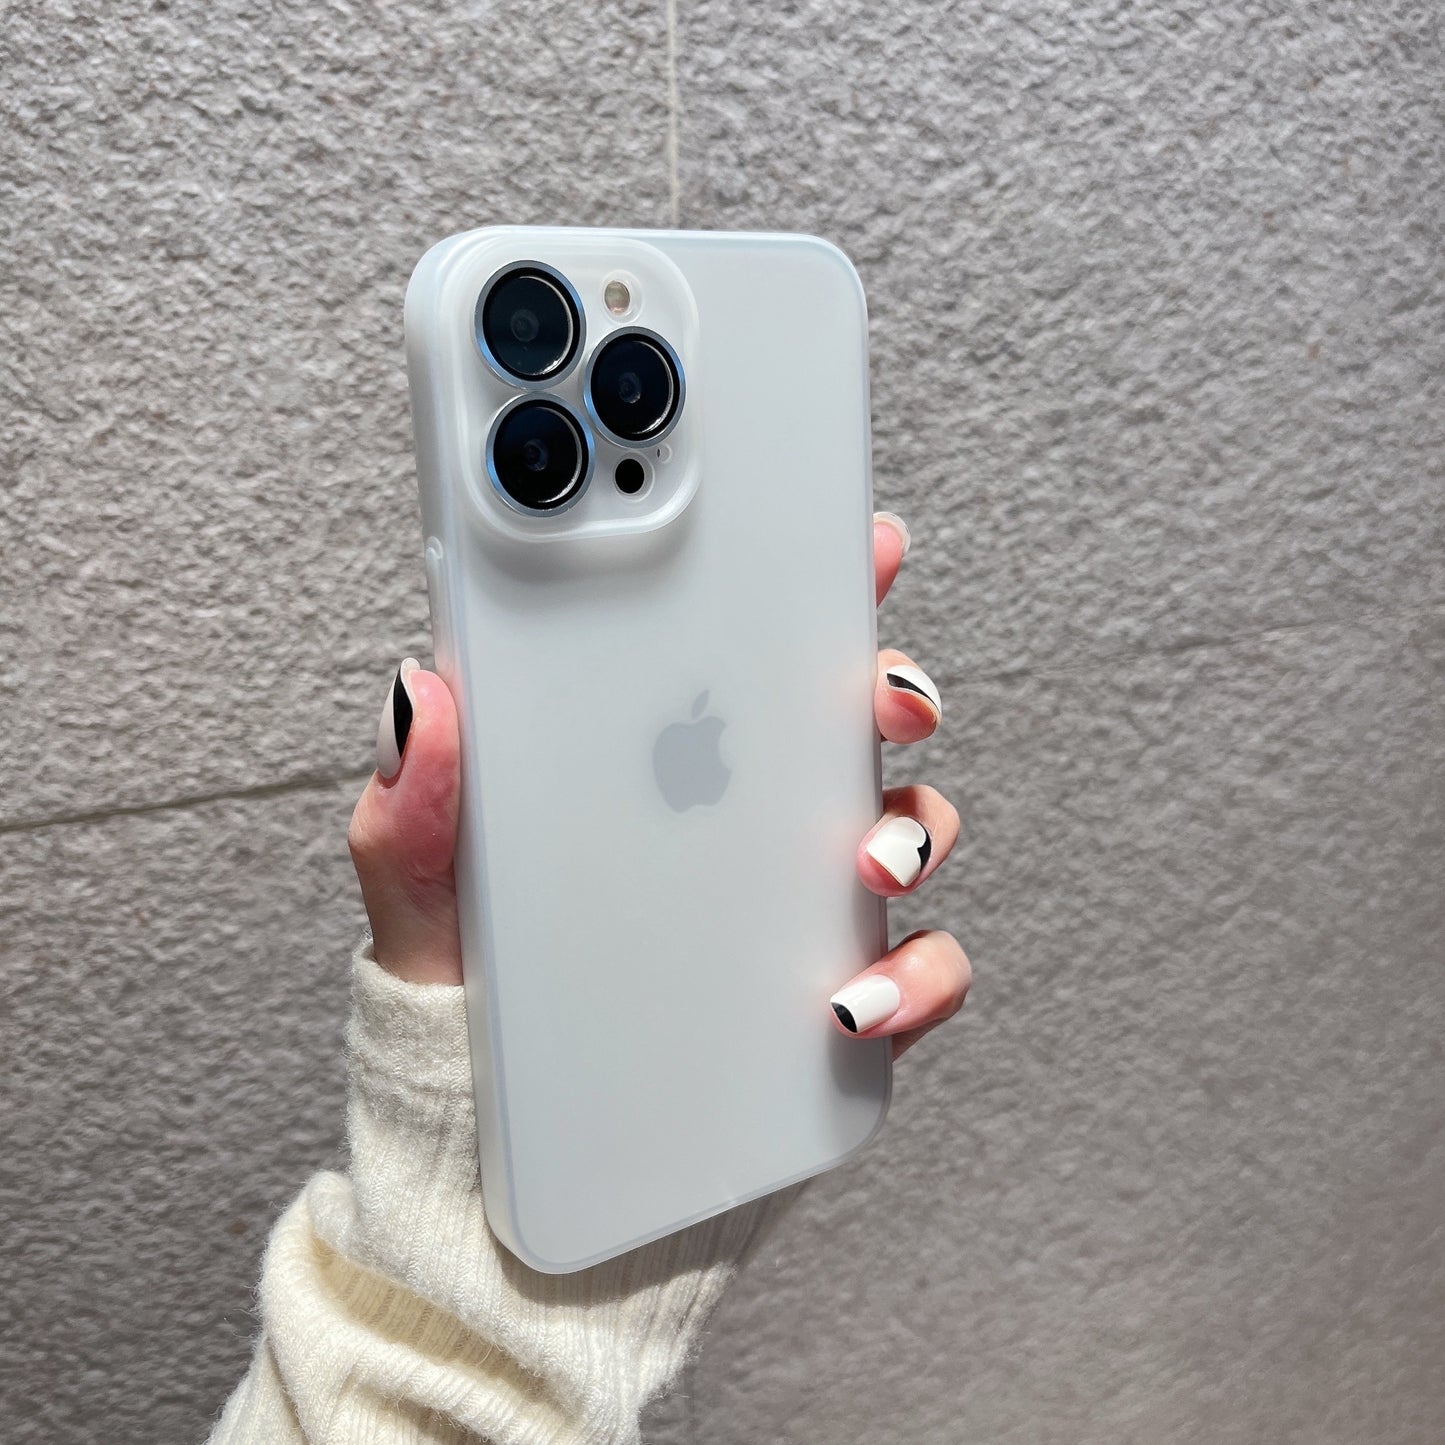 Modische iPhone Hülle in durchsichtigen Farben in weiß